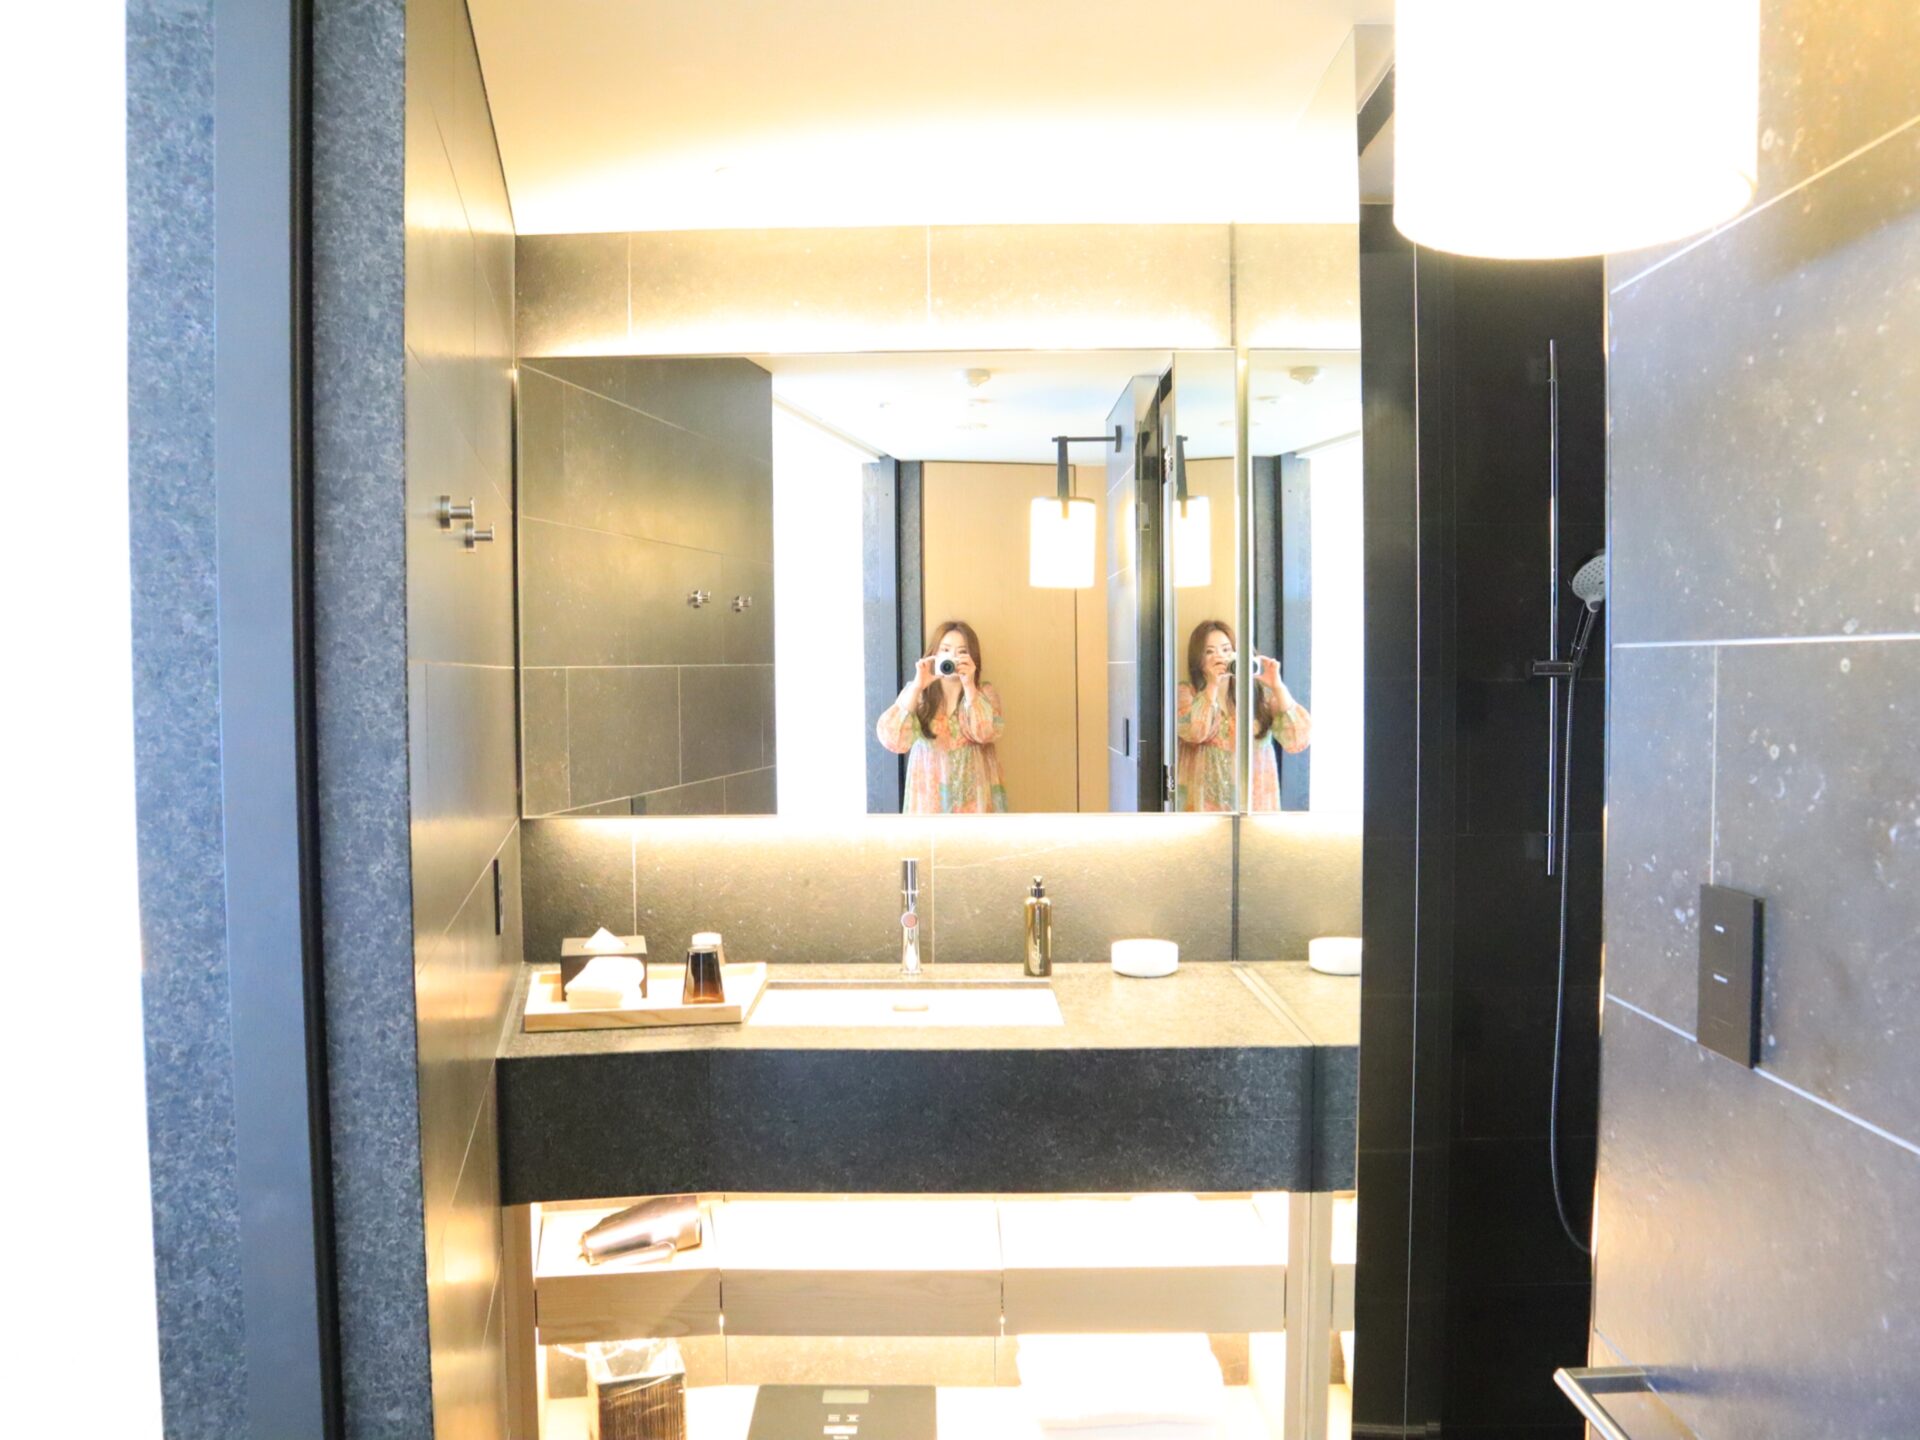 『ソラノホテル』客室の洗面台